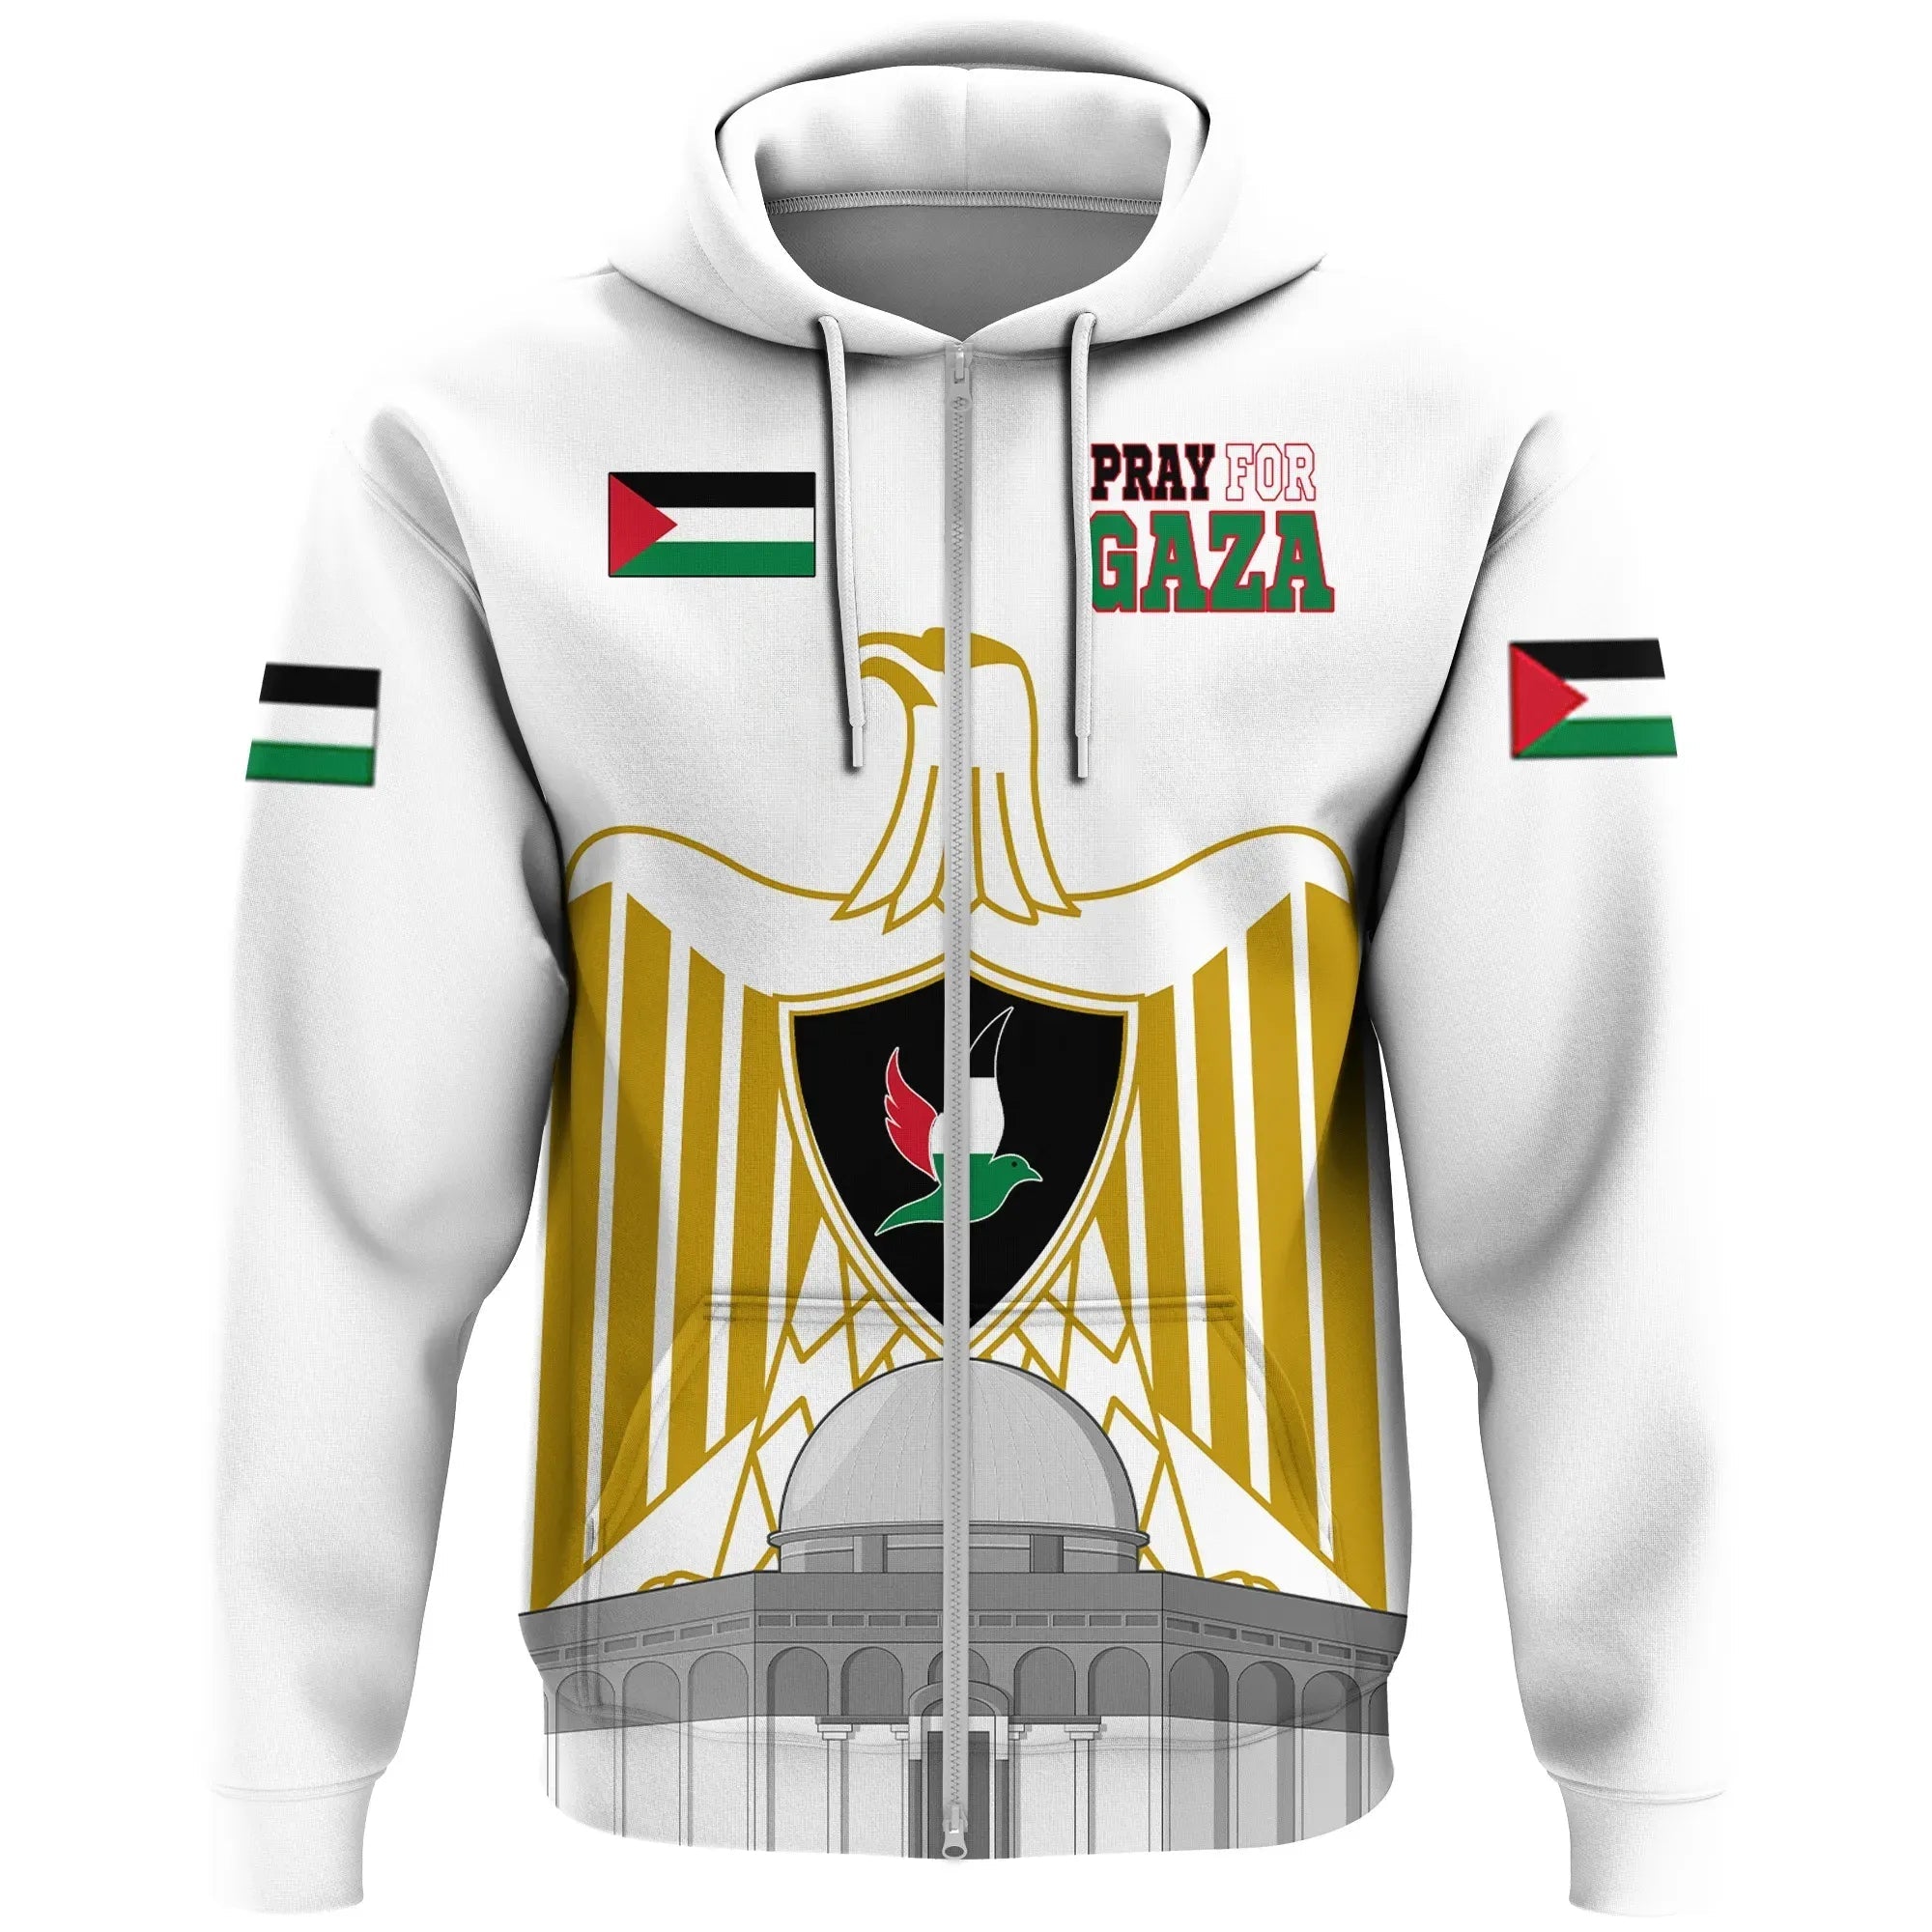 palestine-zip-hoodie-be-stronger-gaza